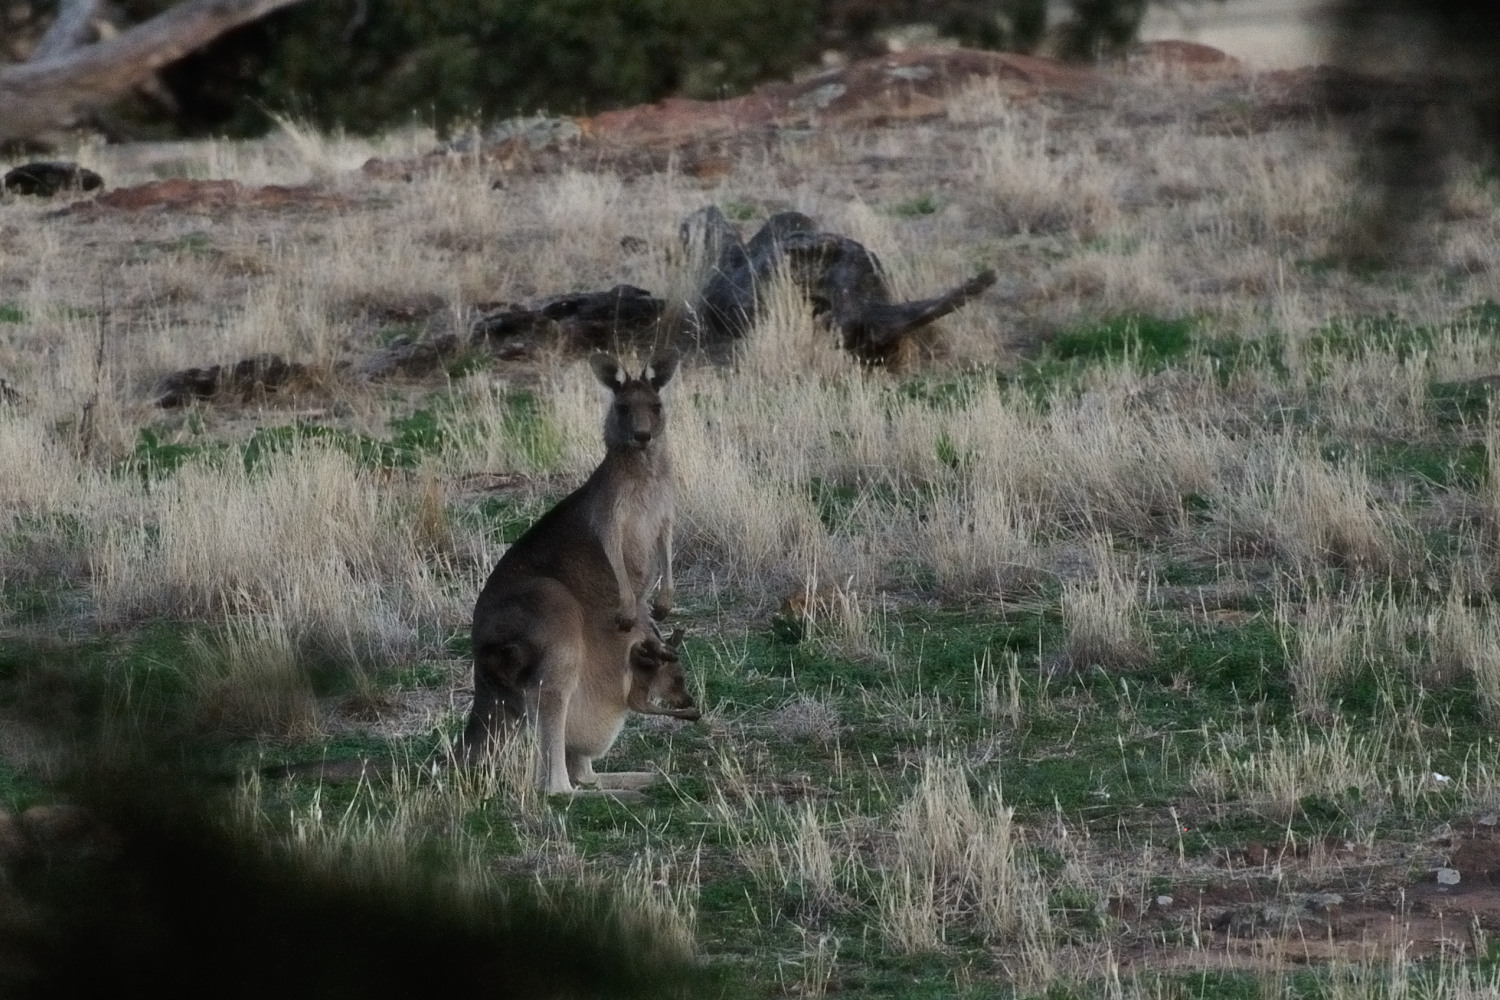 Kangaroos. With photos